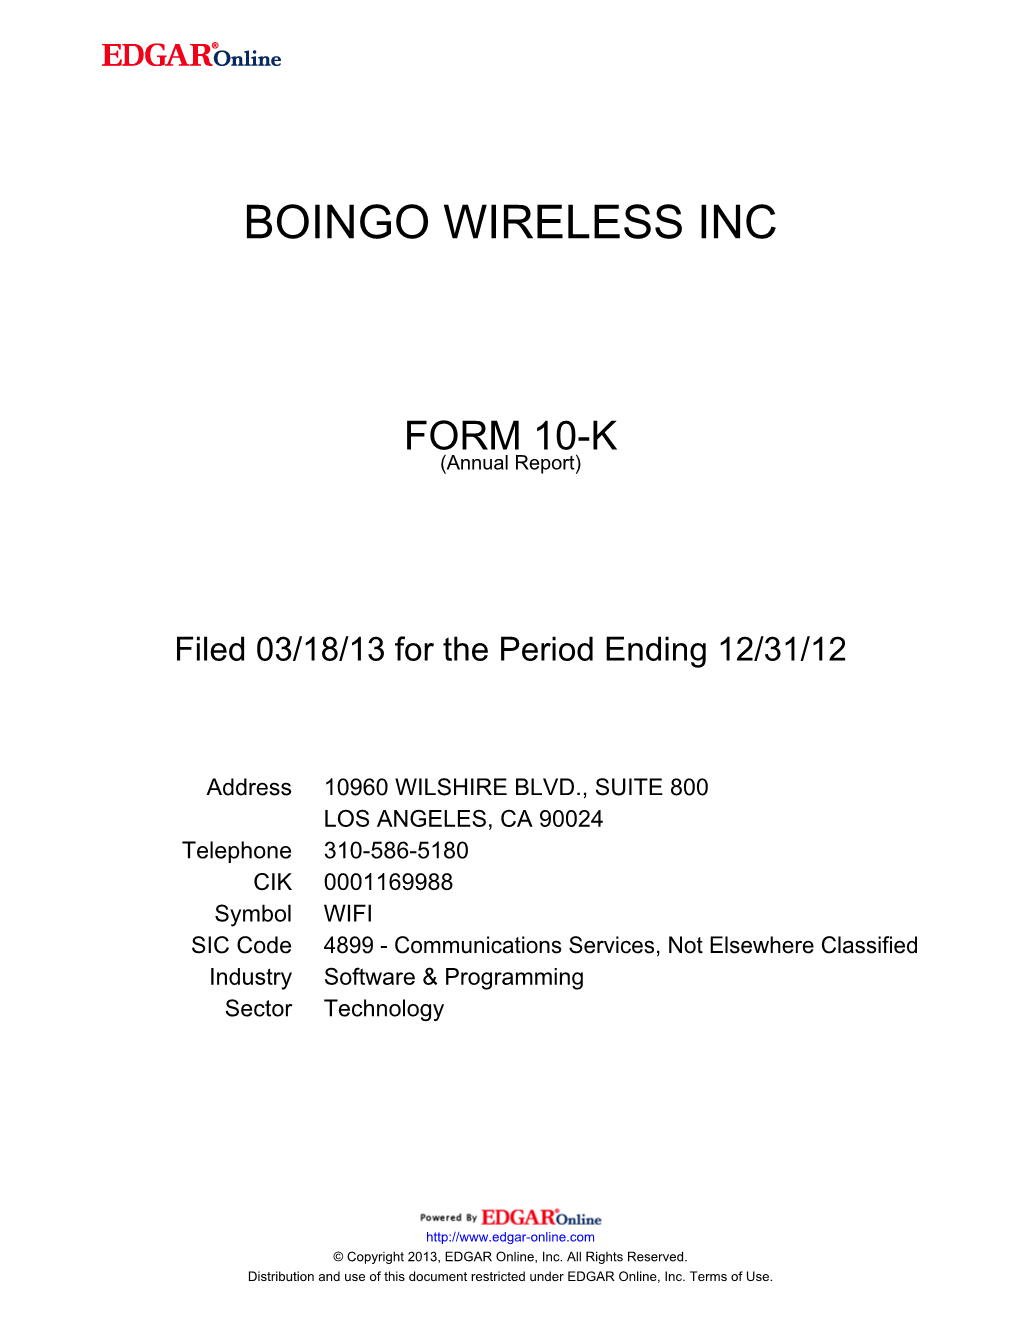 Boingo Wireless Inc